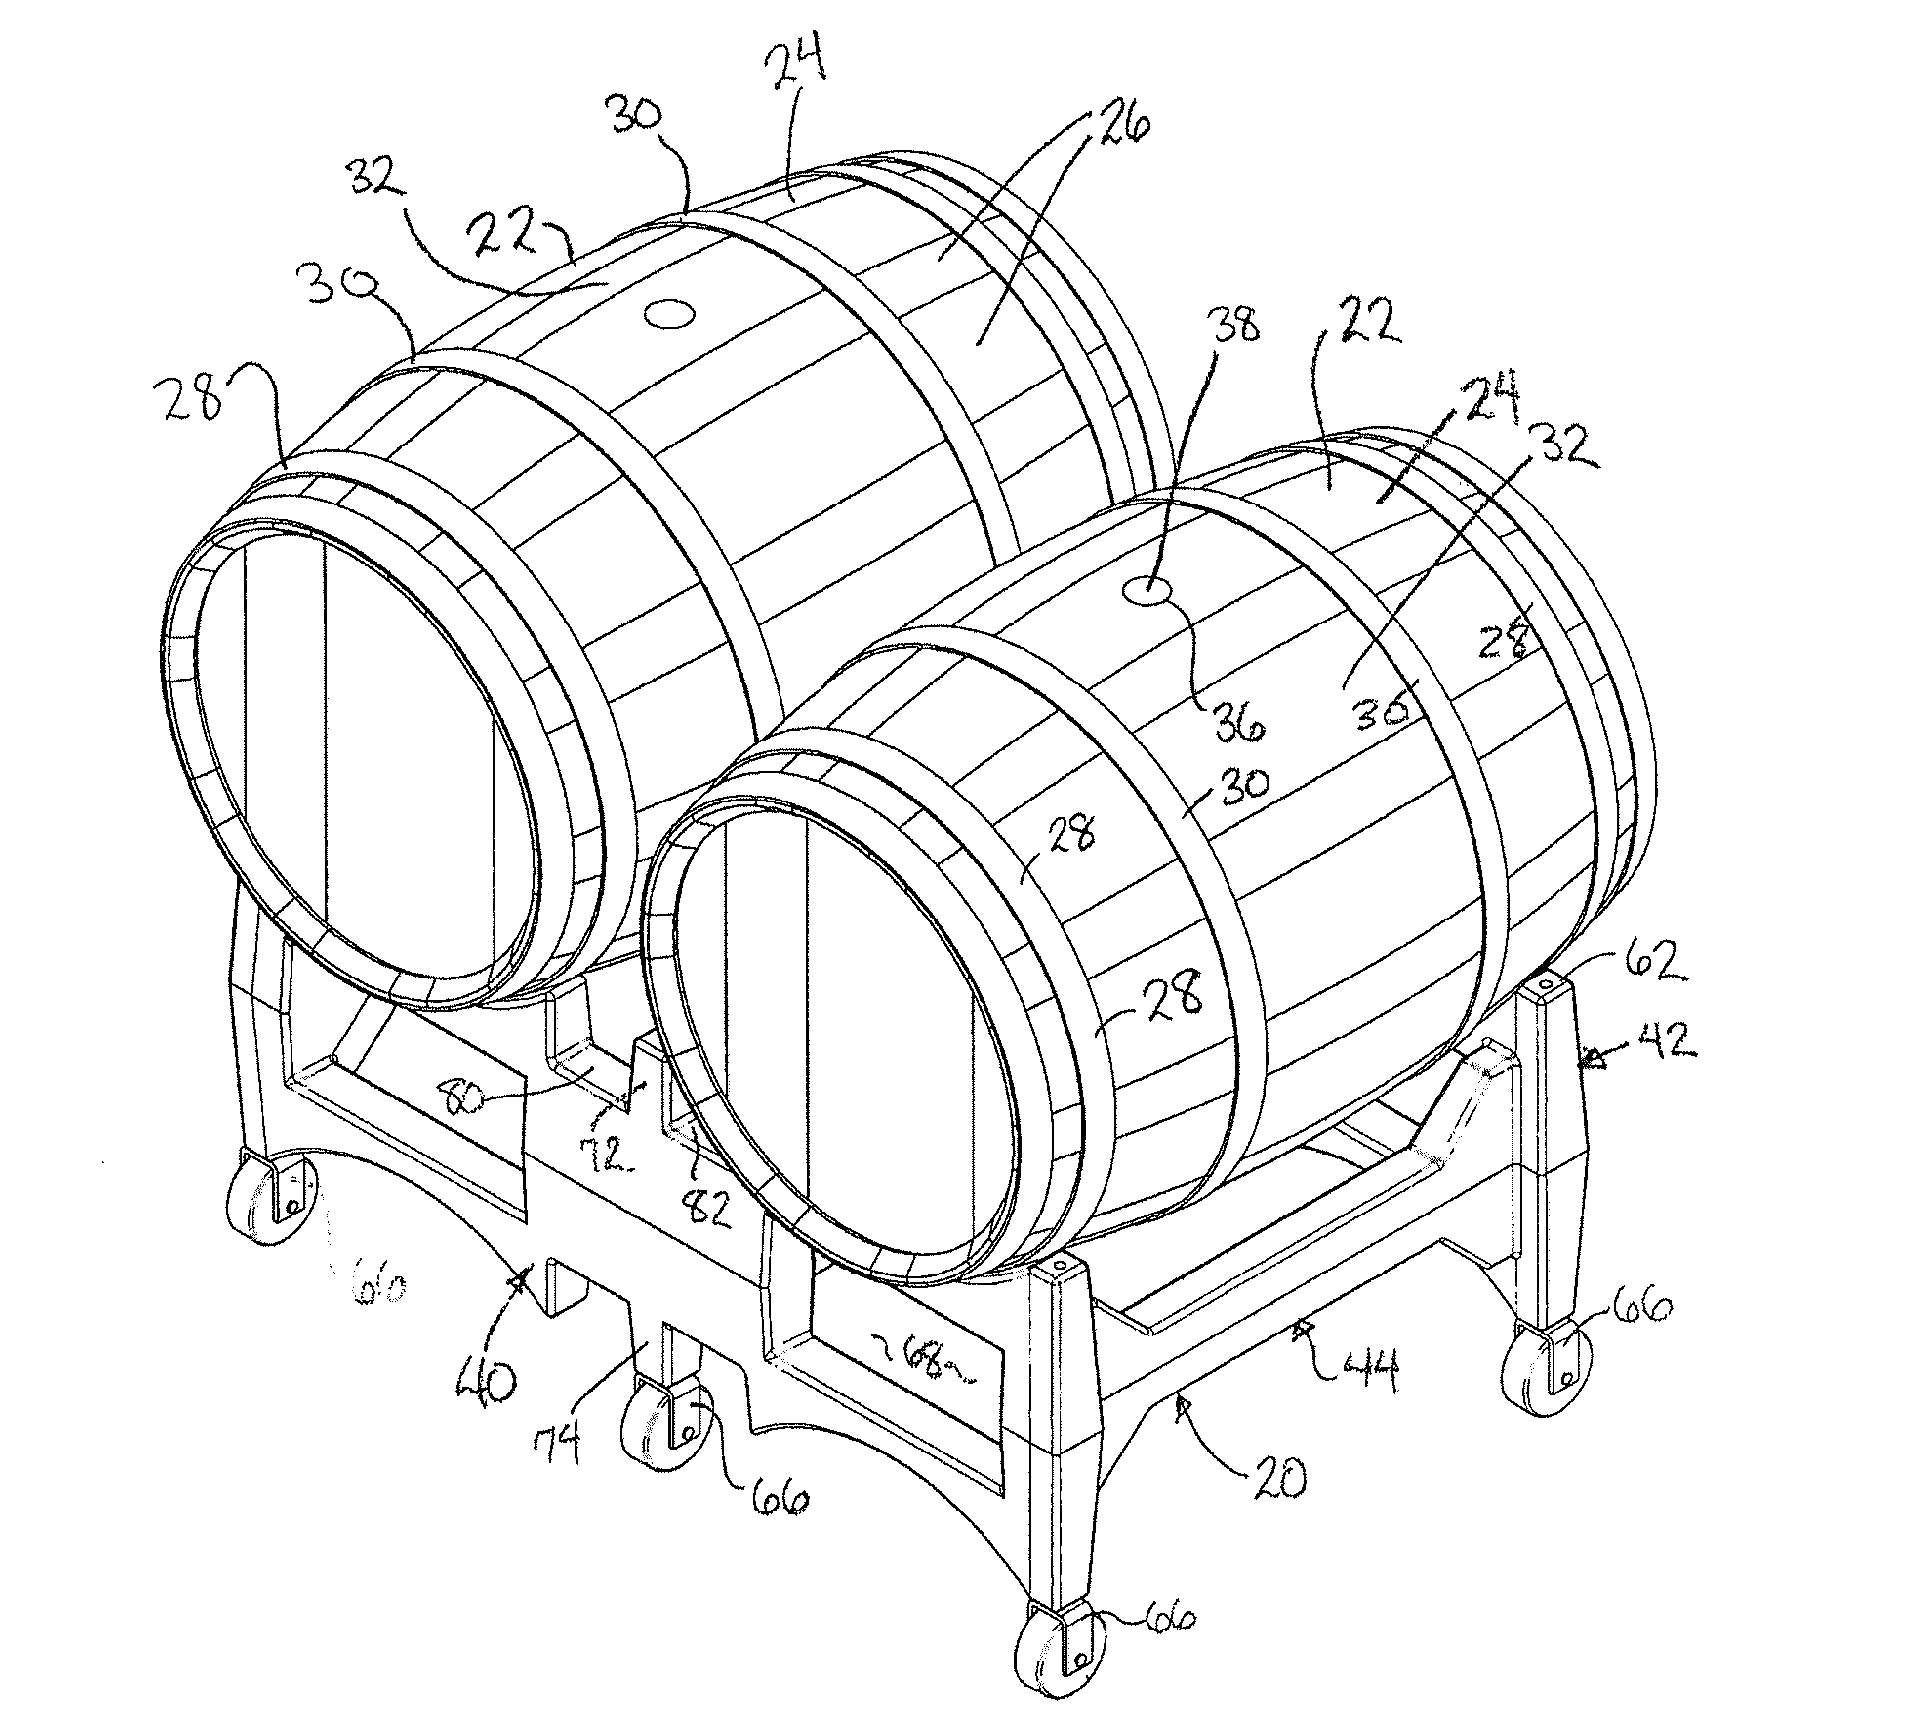 Barrel rack